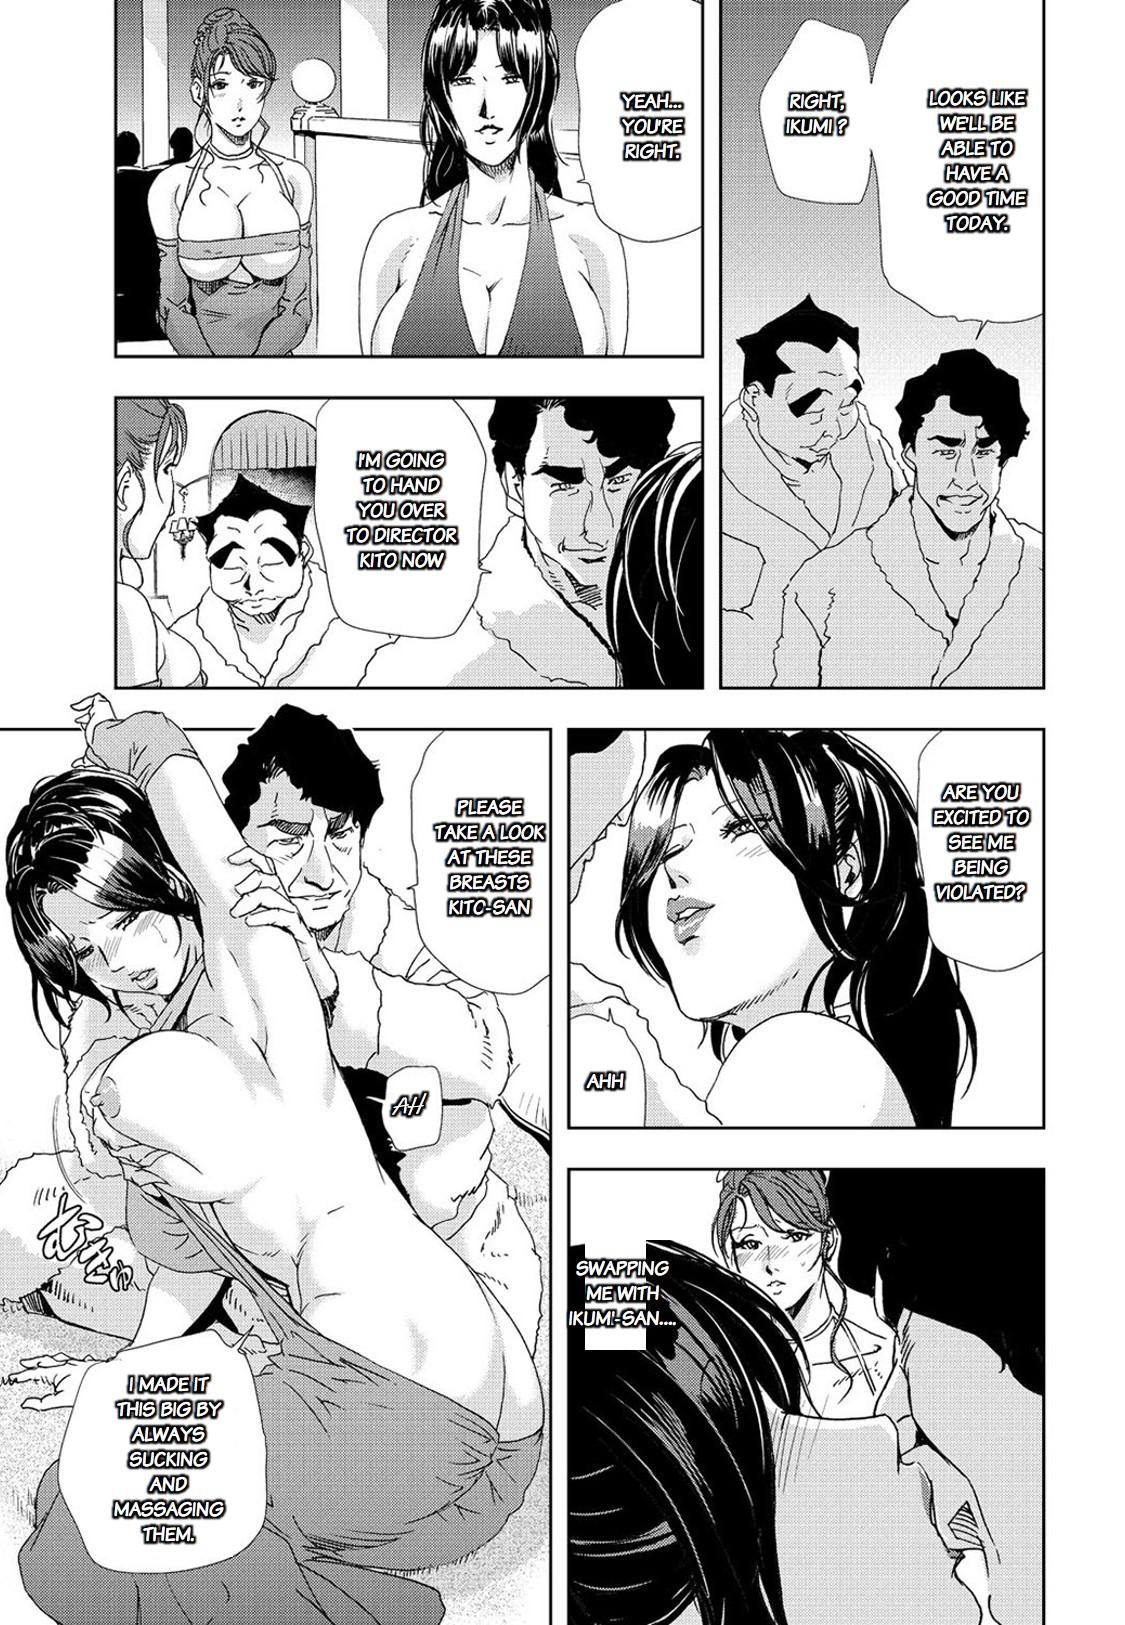 Euro Nikuhisyo Yukiko chapter 25 Futa - Page 8